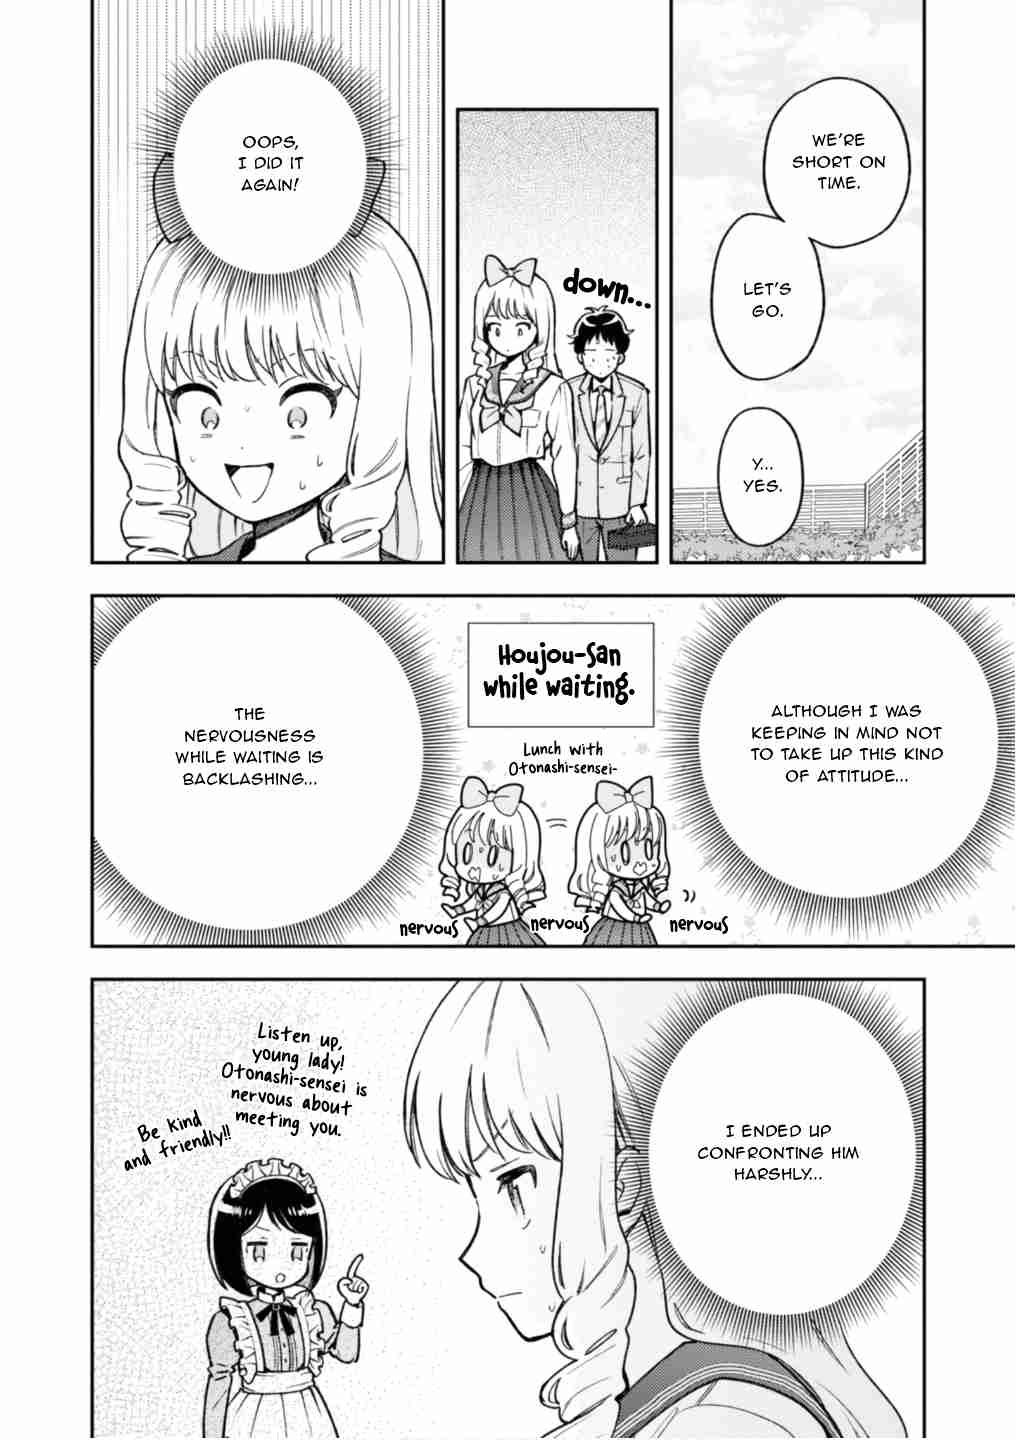 Houjou Urara no Ren'ai Shousetsu Okakinasai! Vol. 1 Ch. 5.1